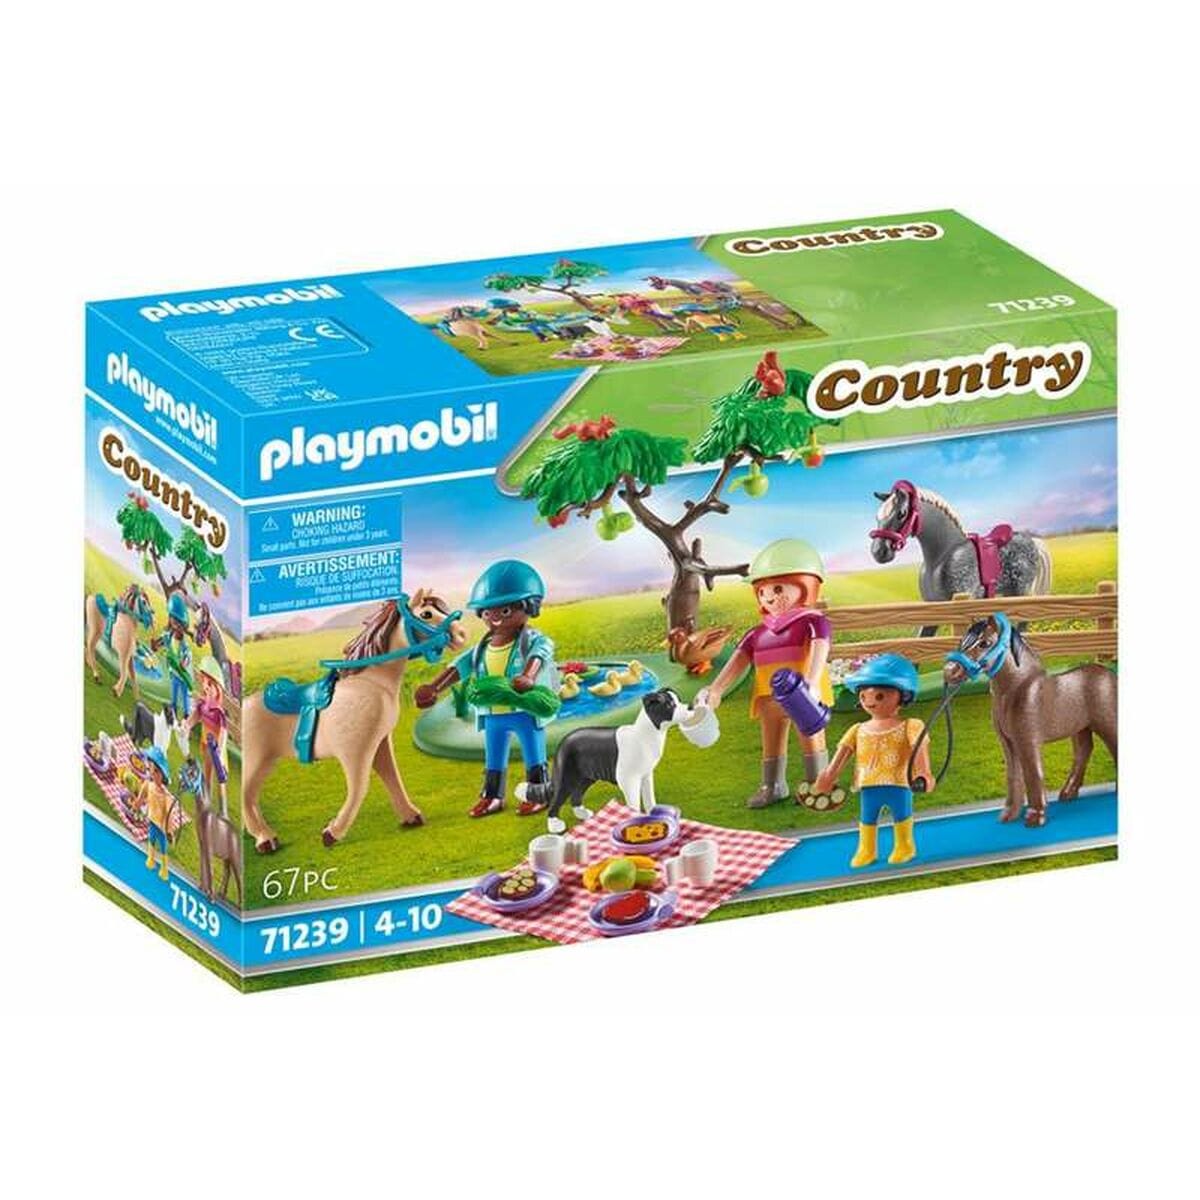 Playmobil Spielzeug | Kostüme > Spielzeug und Spiele > Weiteres spielzeug Playset Playmobil Country Picnic 67 Stücke